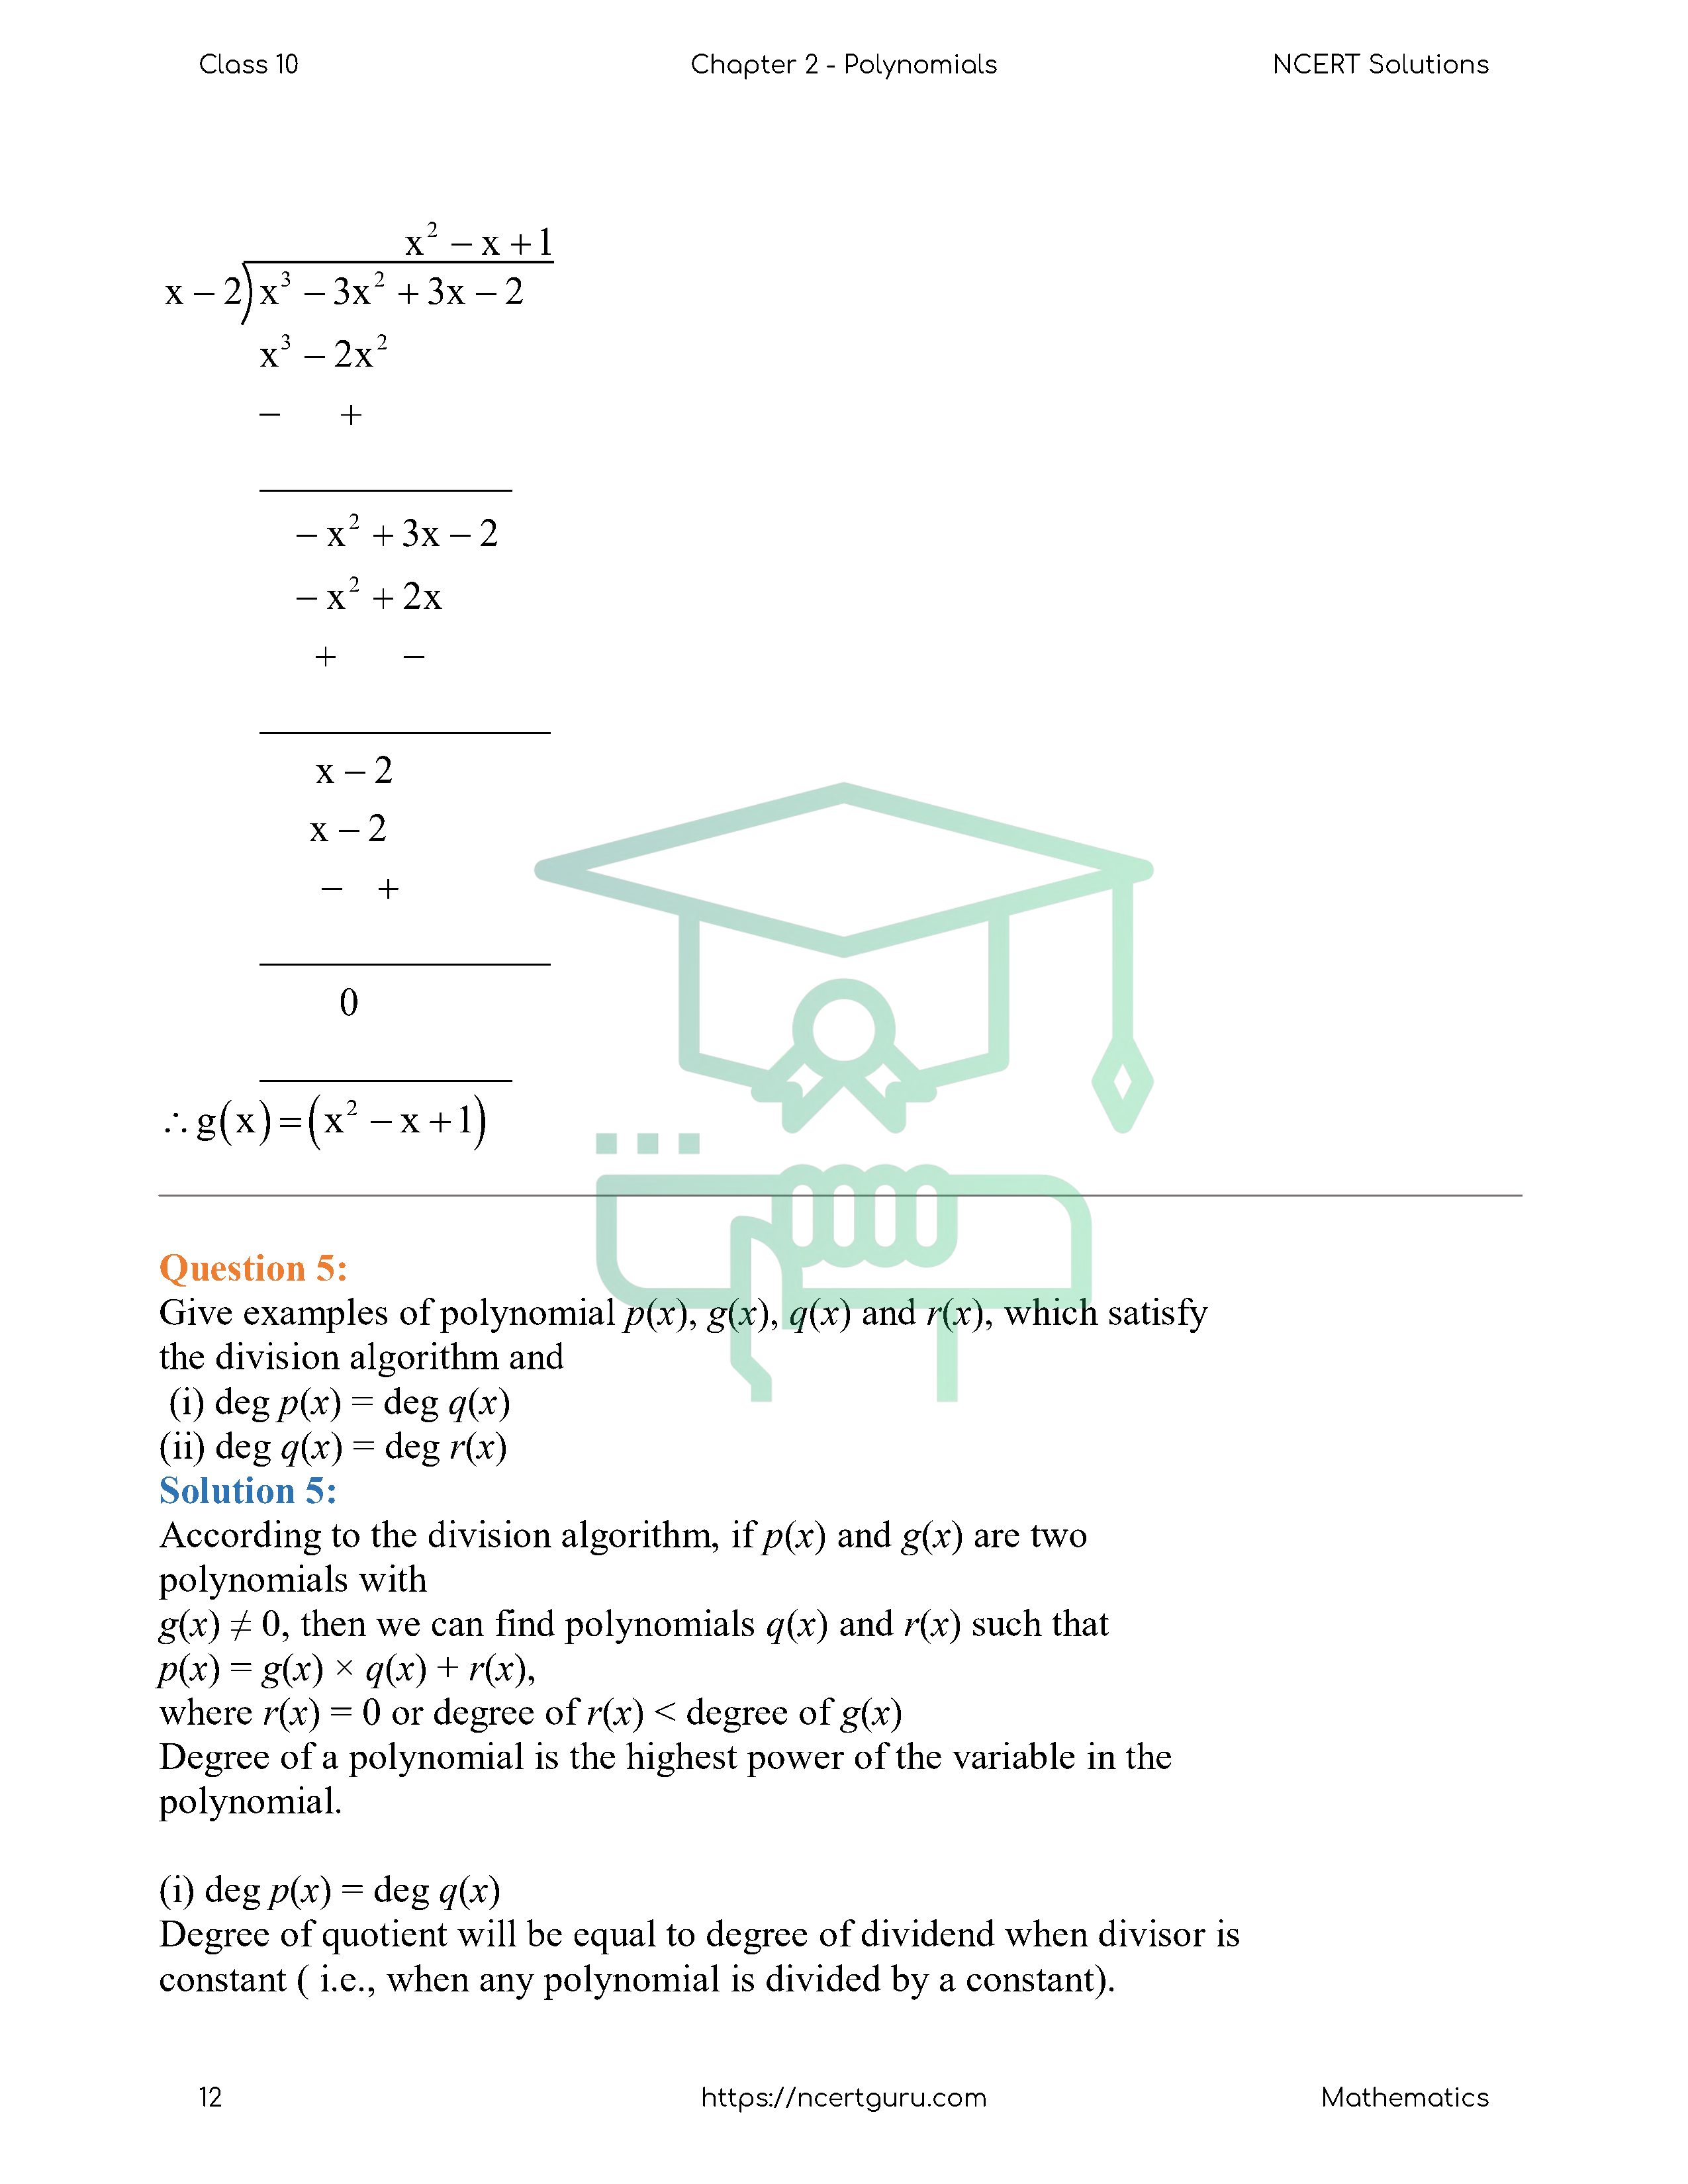 NCERT Solutions for Class 10 Maths Chapter 2